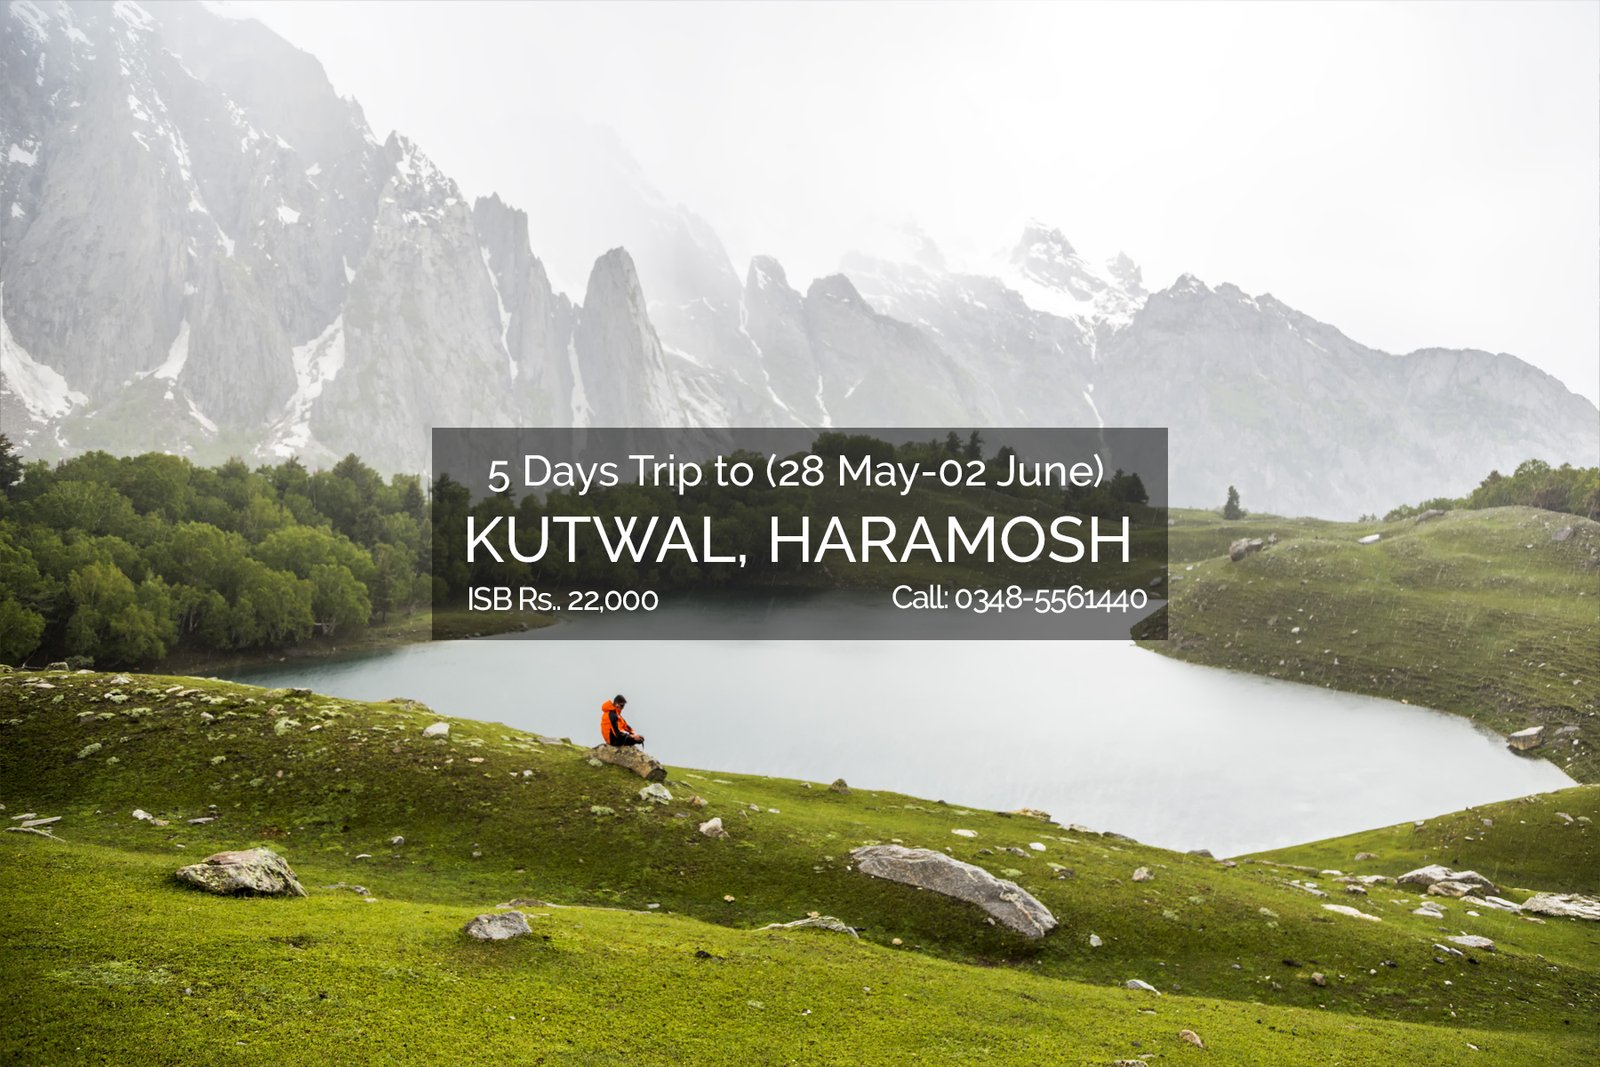 Kutwal valley, Haramosh valley trip